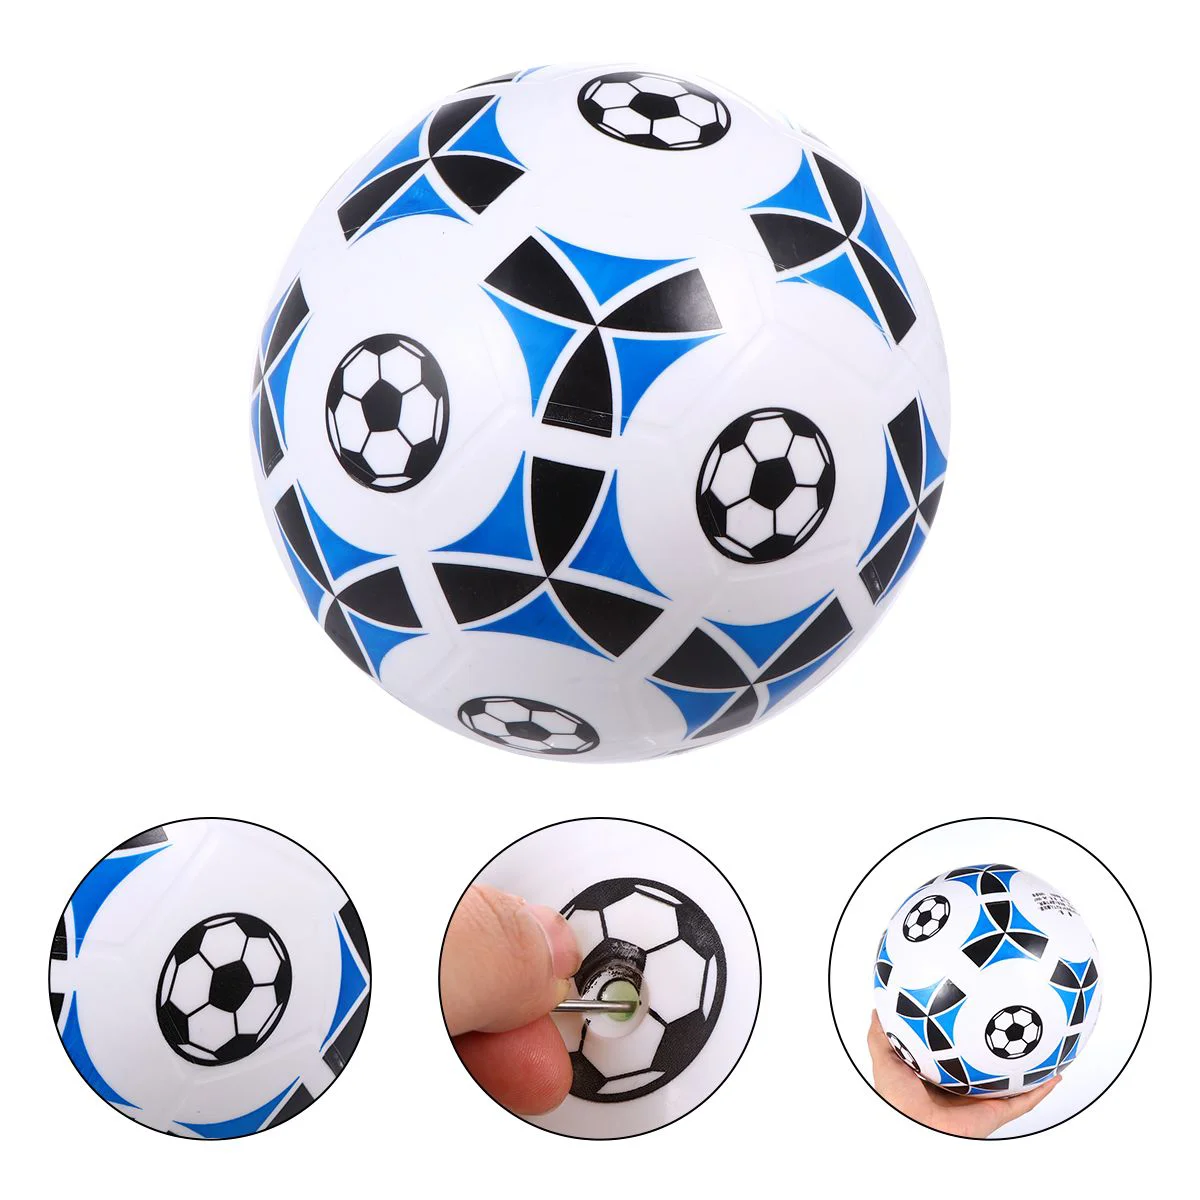 

8 5 игрушечный мяч, ПВХ надувные мячи для игры в футбол, подарок для детей